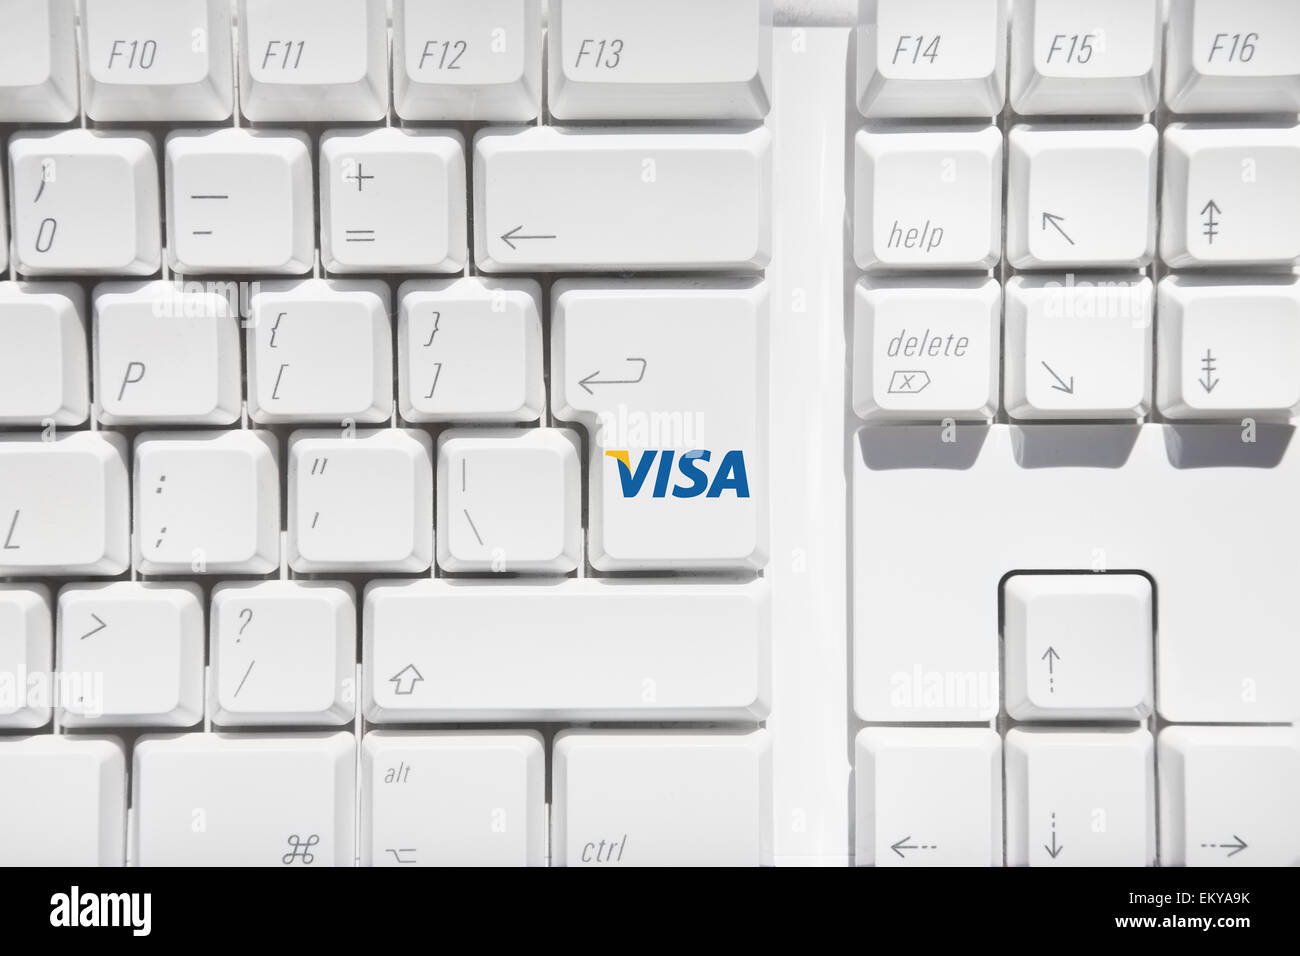 Clavier ordinateur blanc avec logo Visa sur la touche retour Banque D'Images